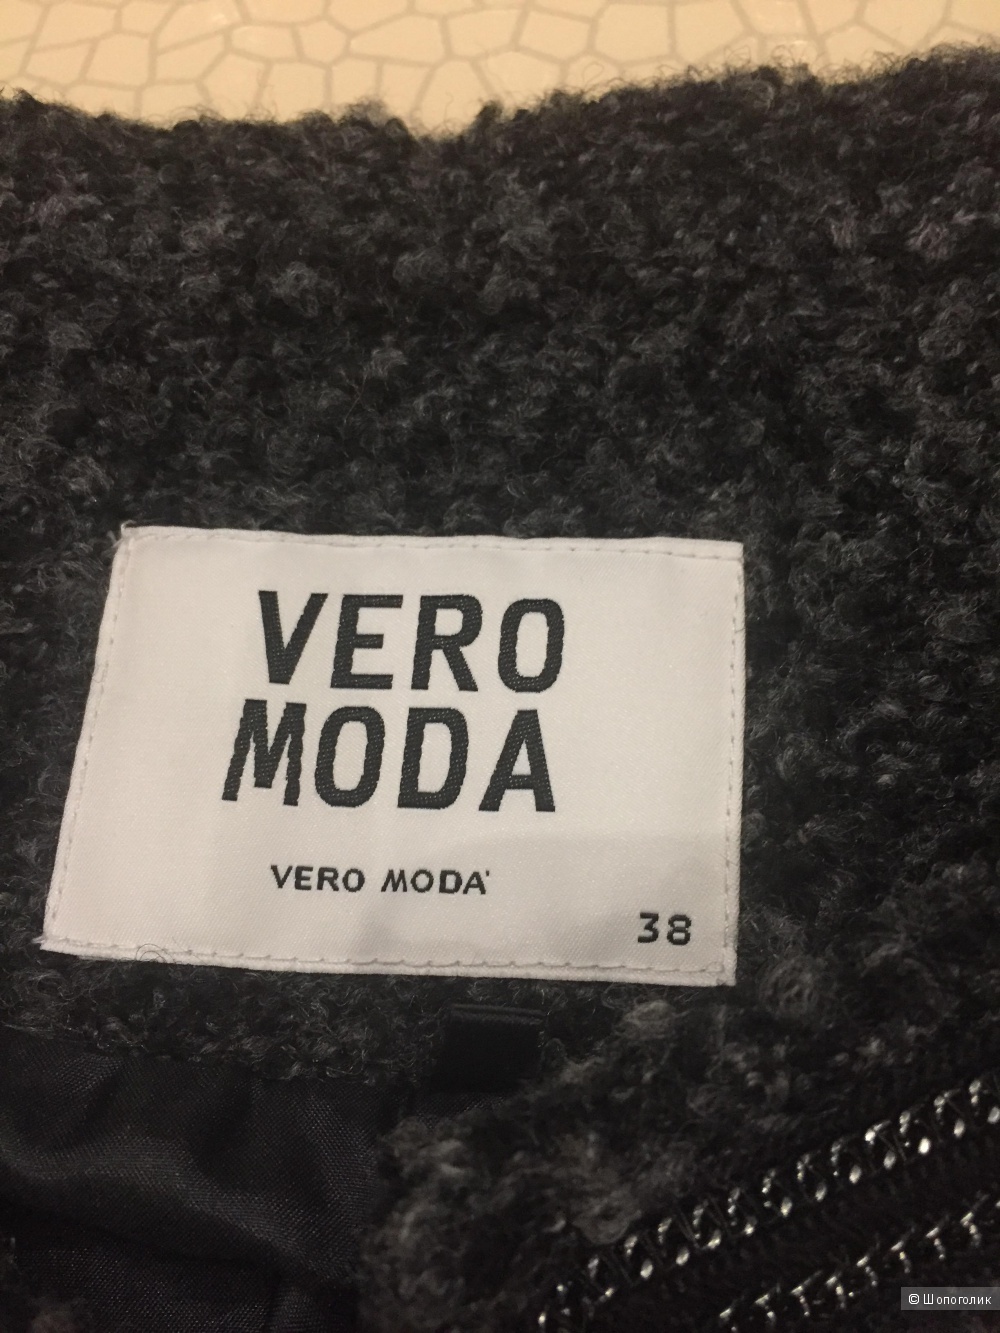 Жакет Vero moda, р 38 EUR